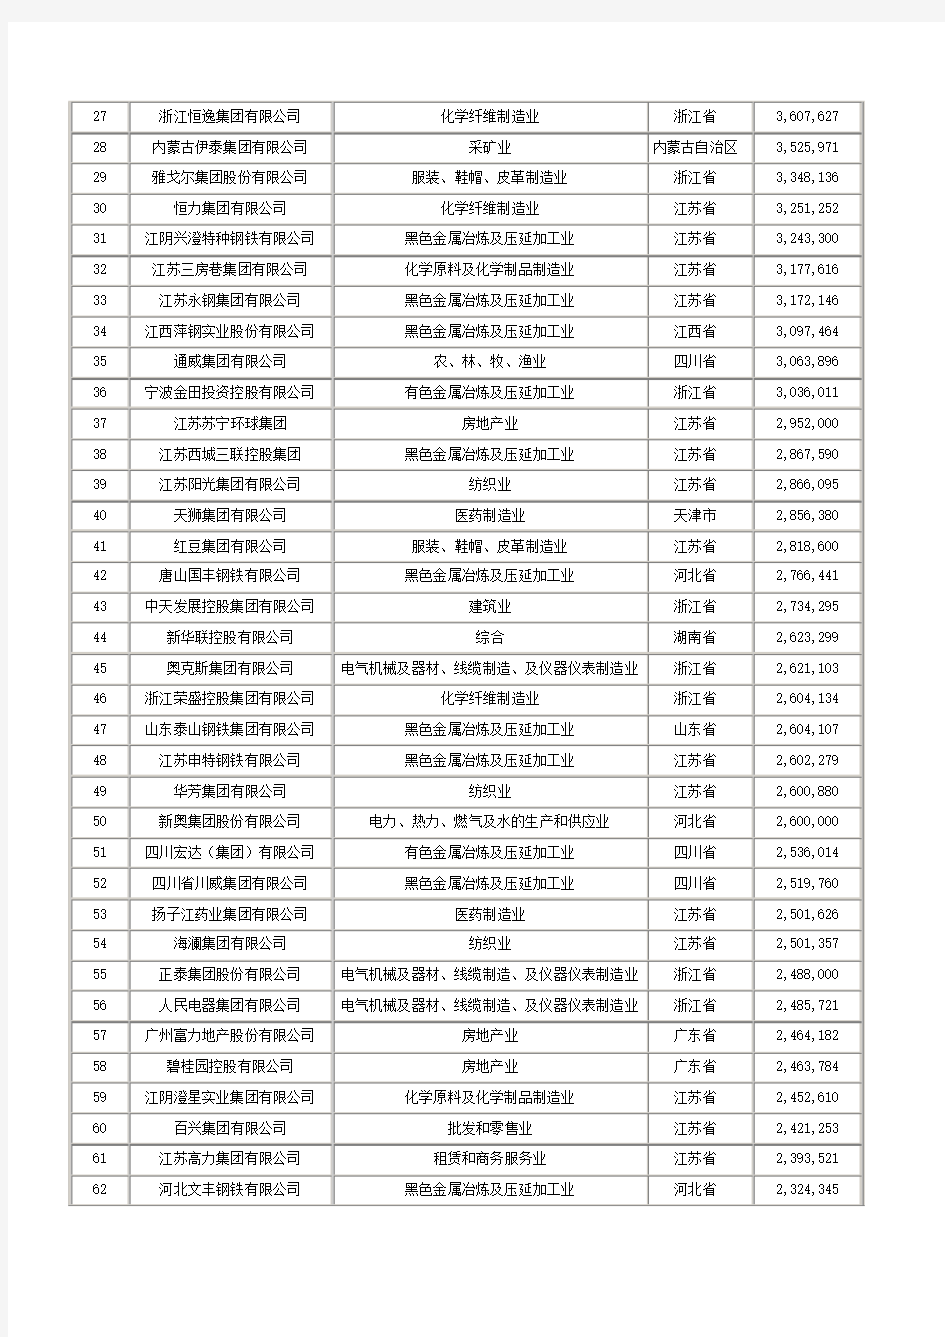 2011中国民营企业500强详细名单